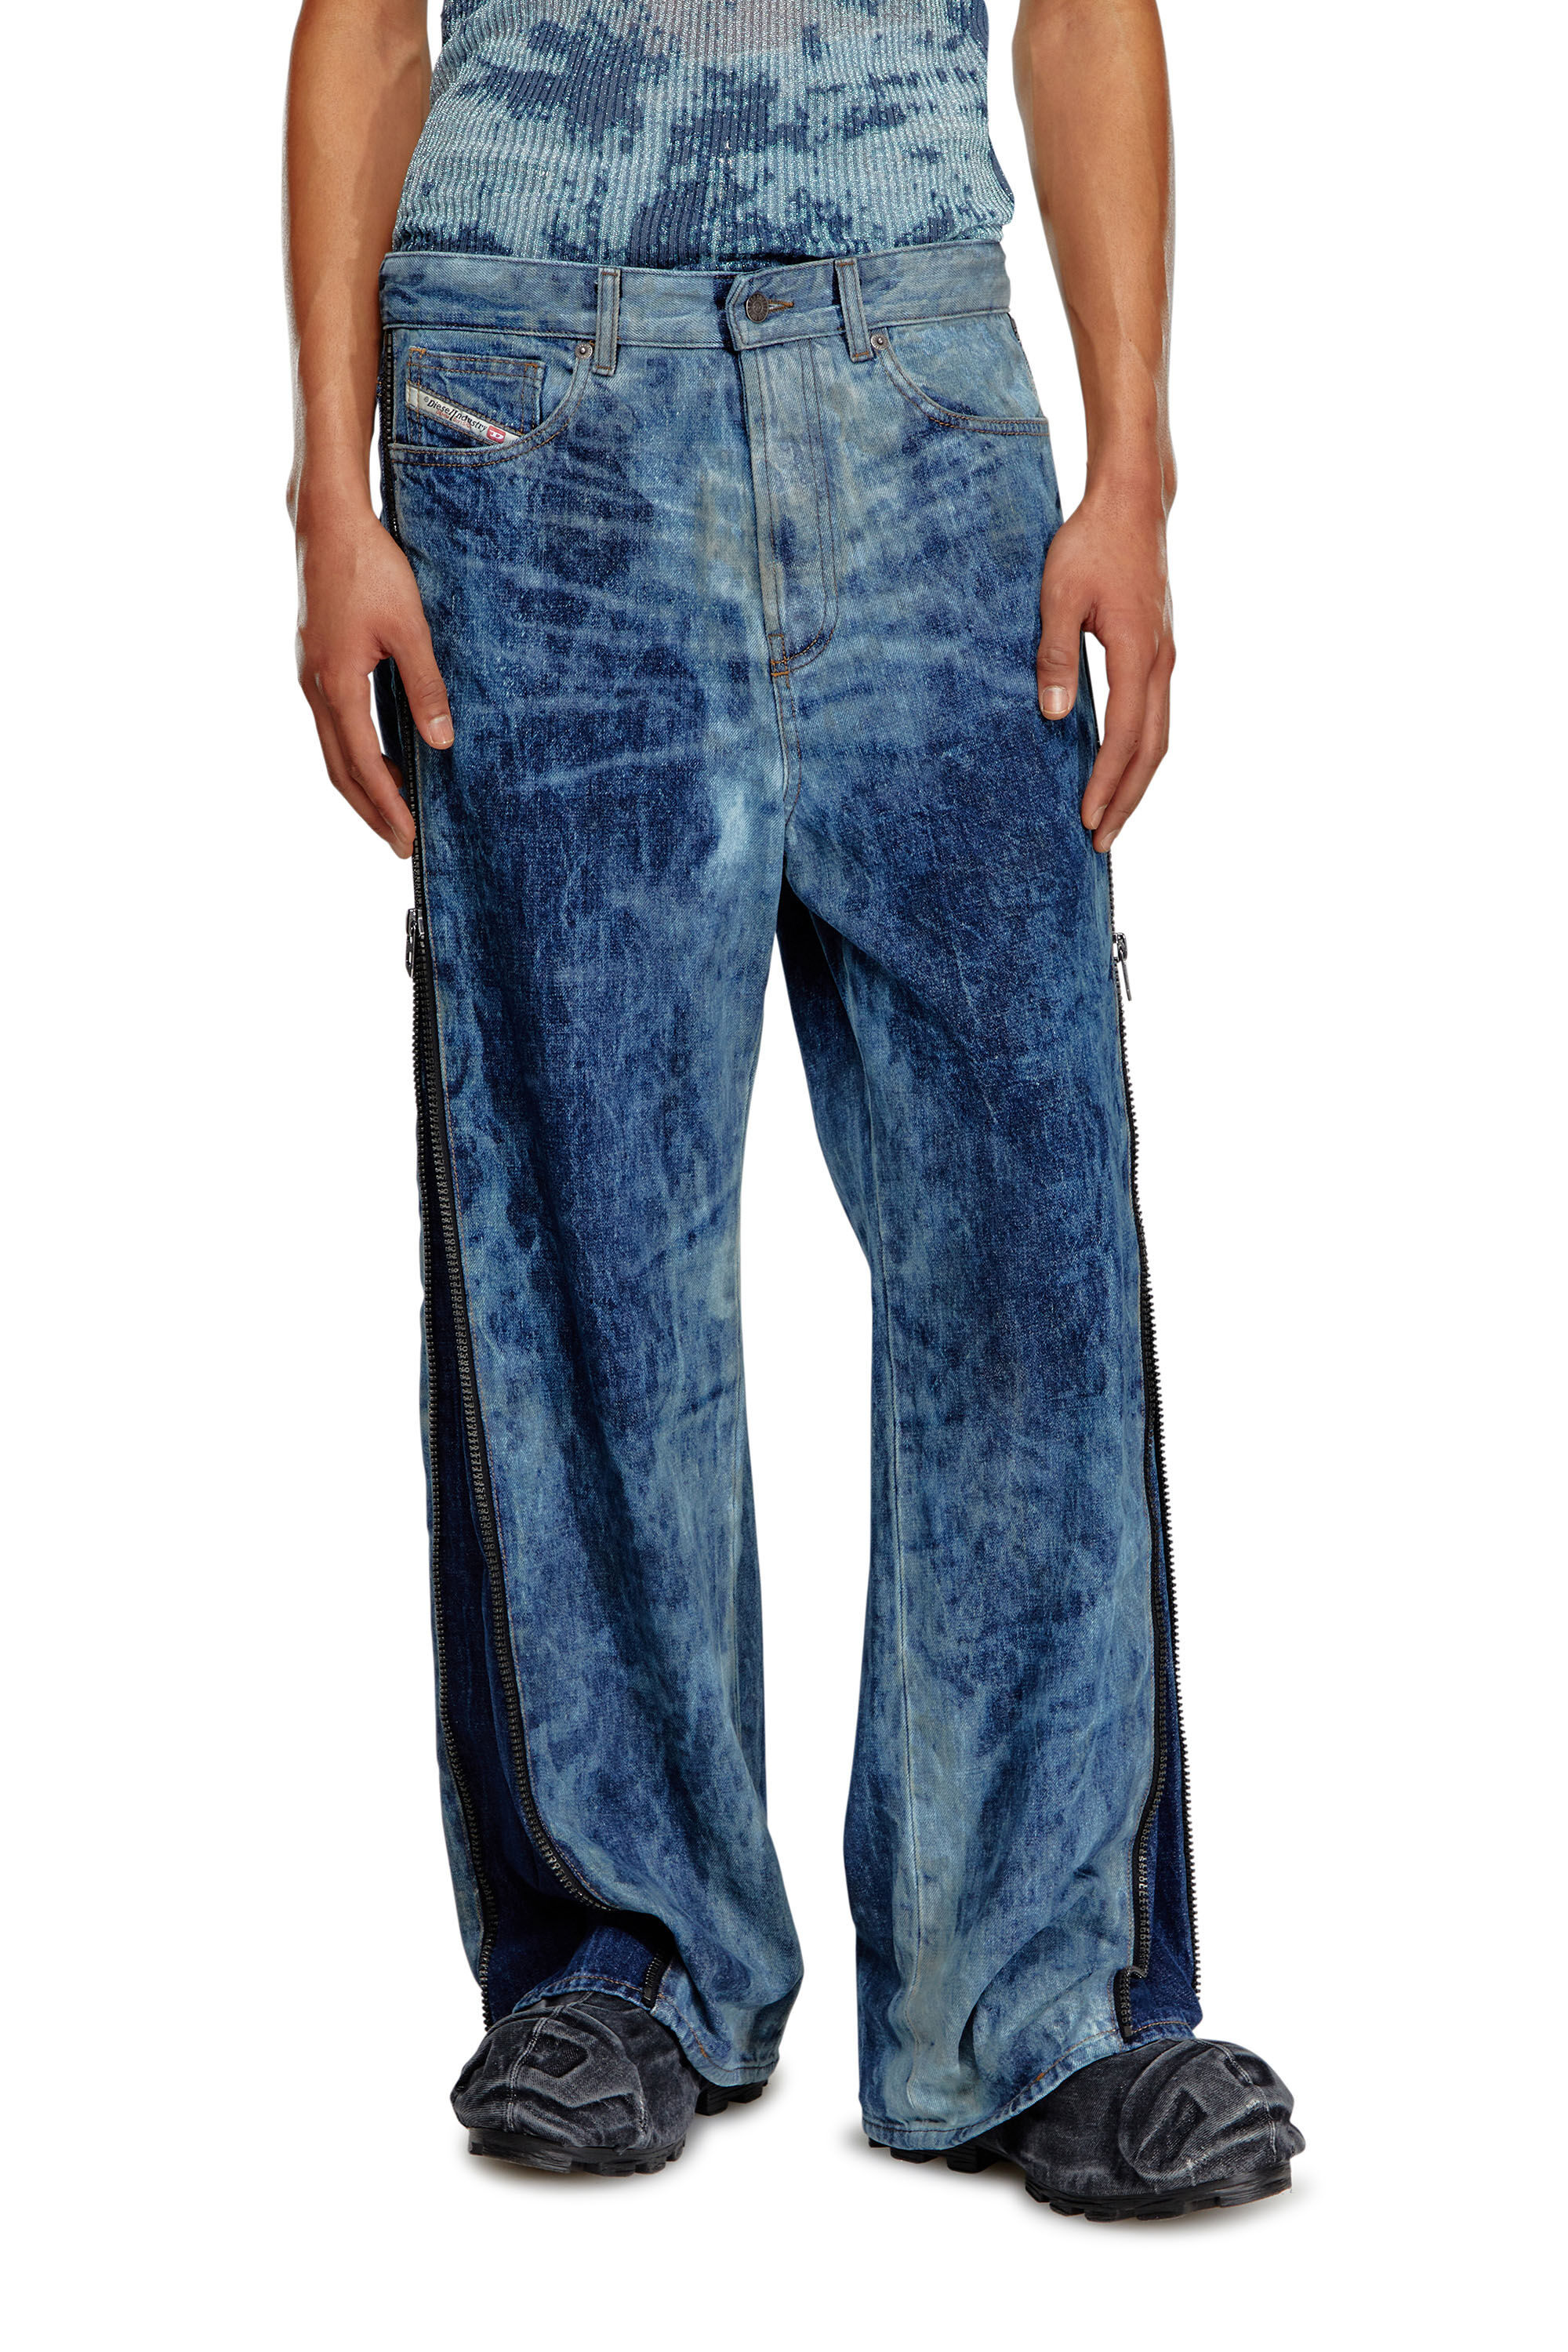 Men's Oversized Straight Jeans | Medium blue | Diesel D-Rise